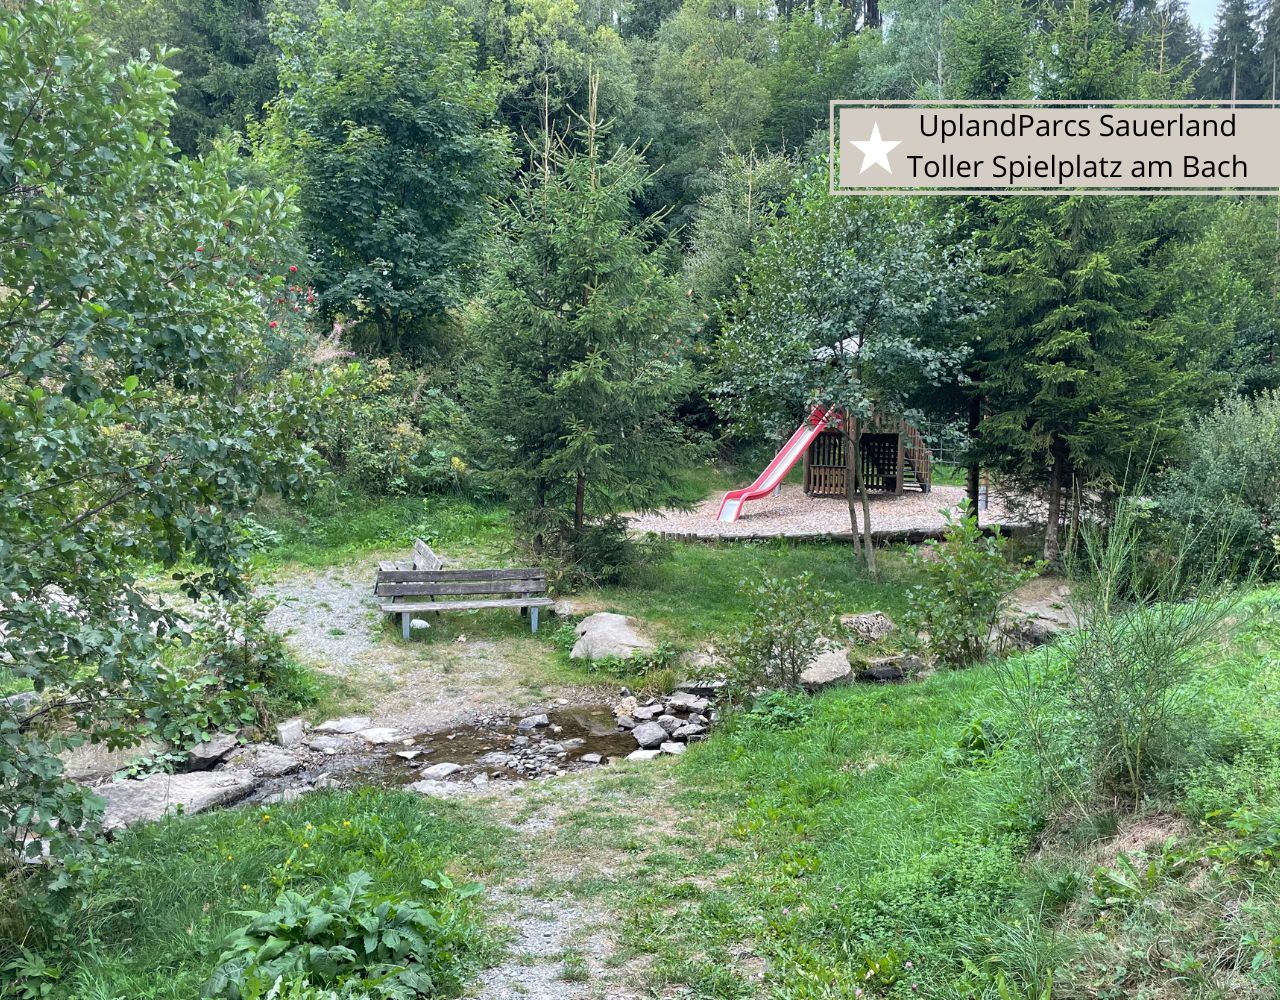 Ferienparks in Winterberg -UplandParcs Sauerland mit Spielplatz am Bach